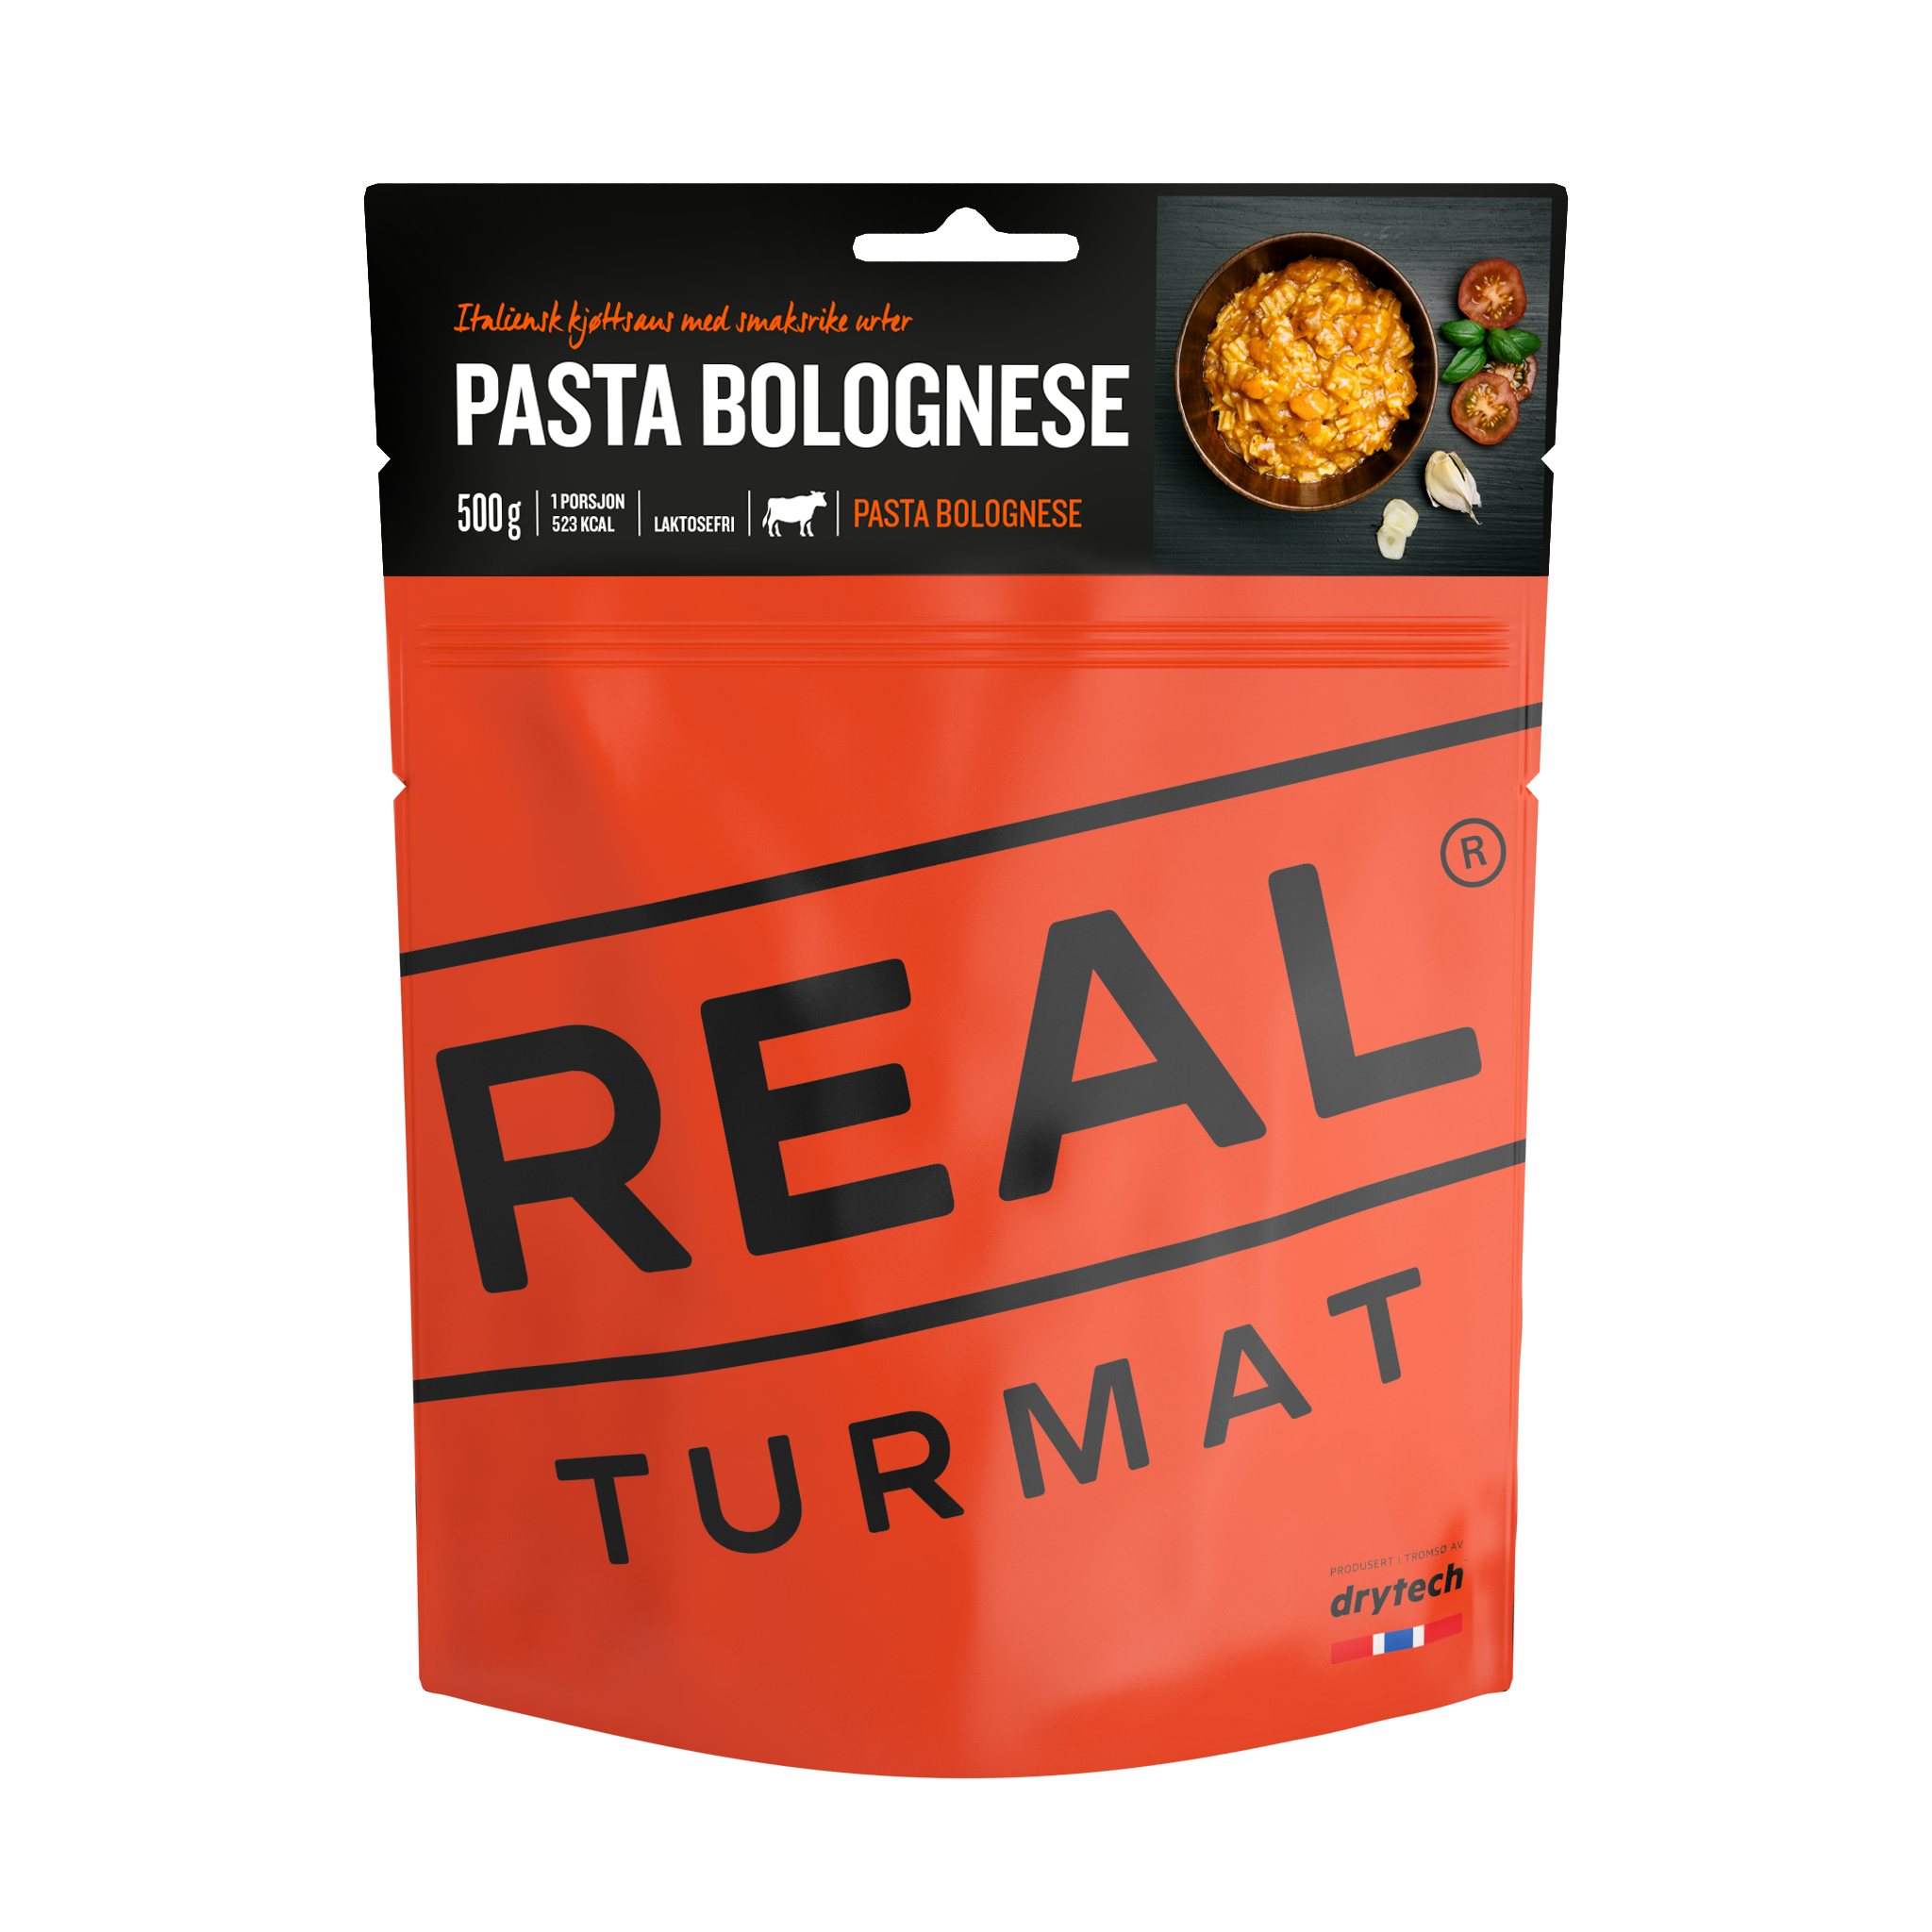 REAL Turmat Pasta Bolognese [525 kcal]